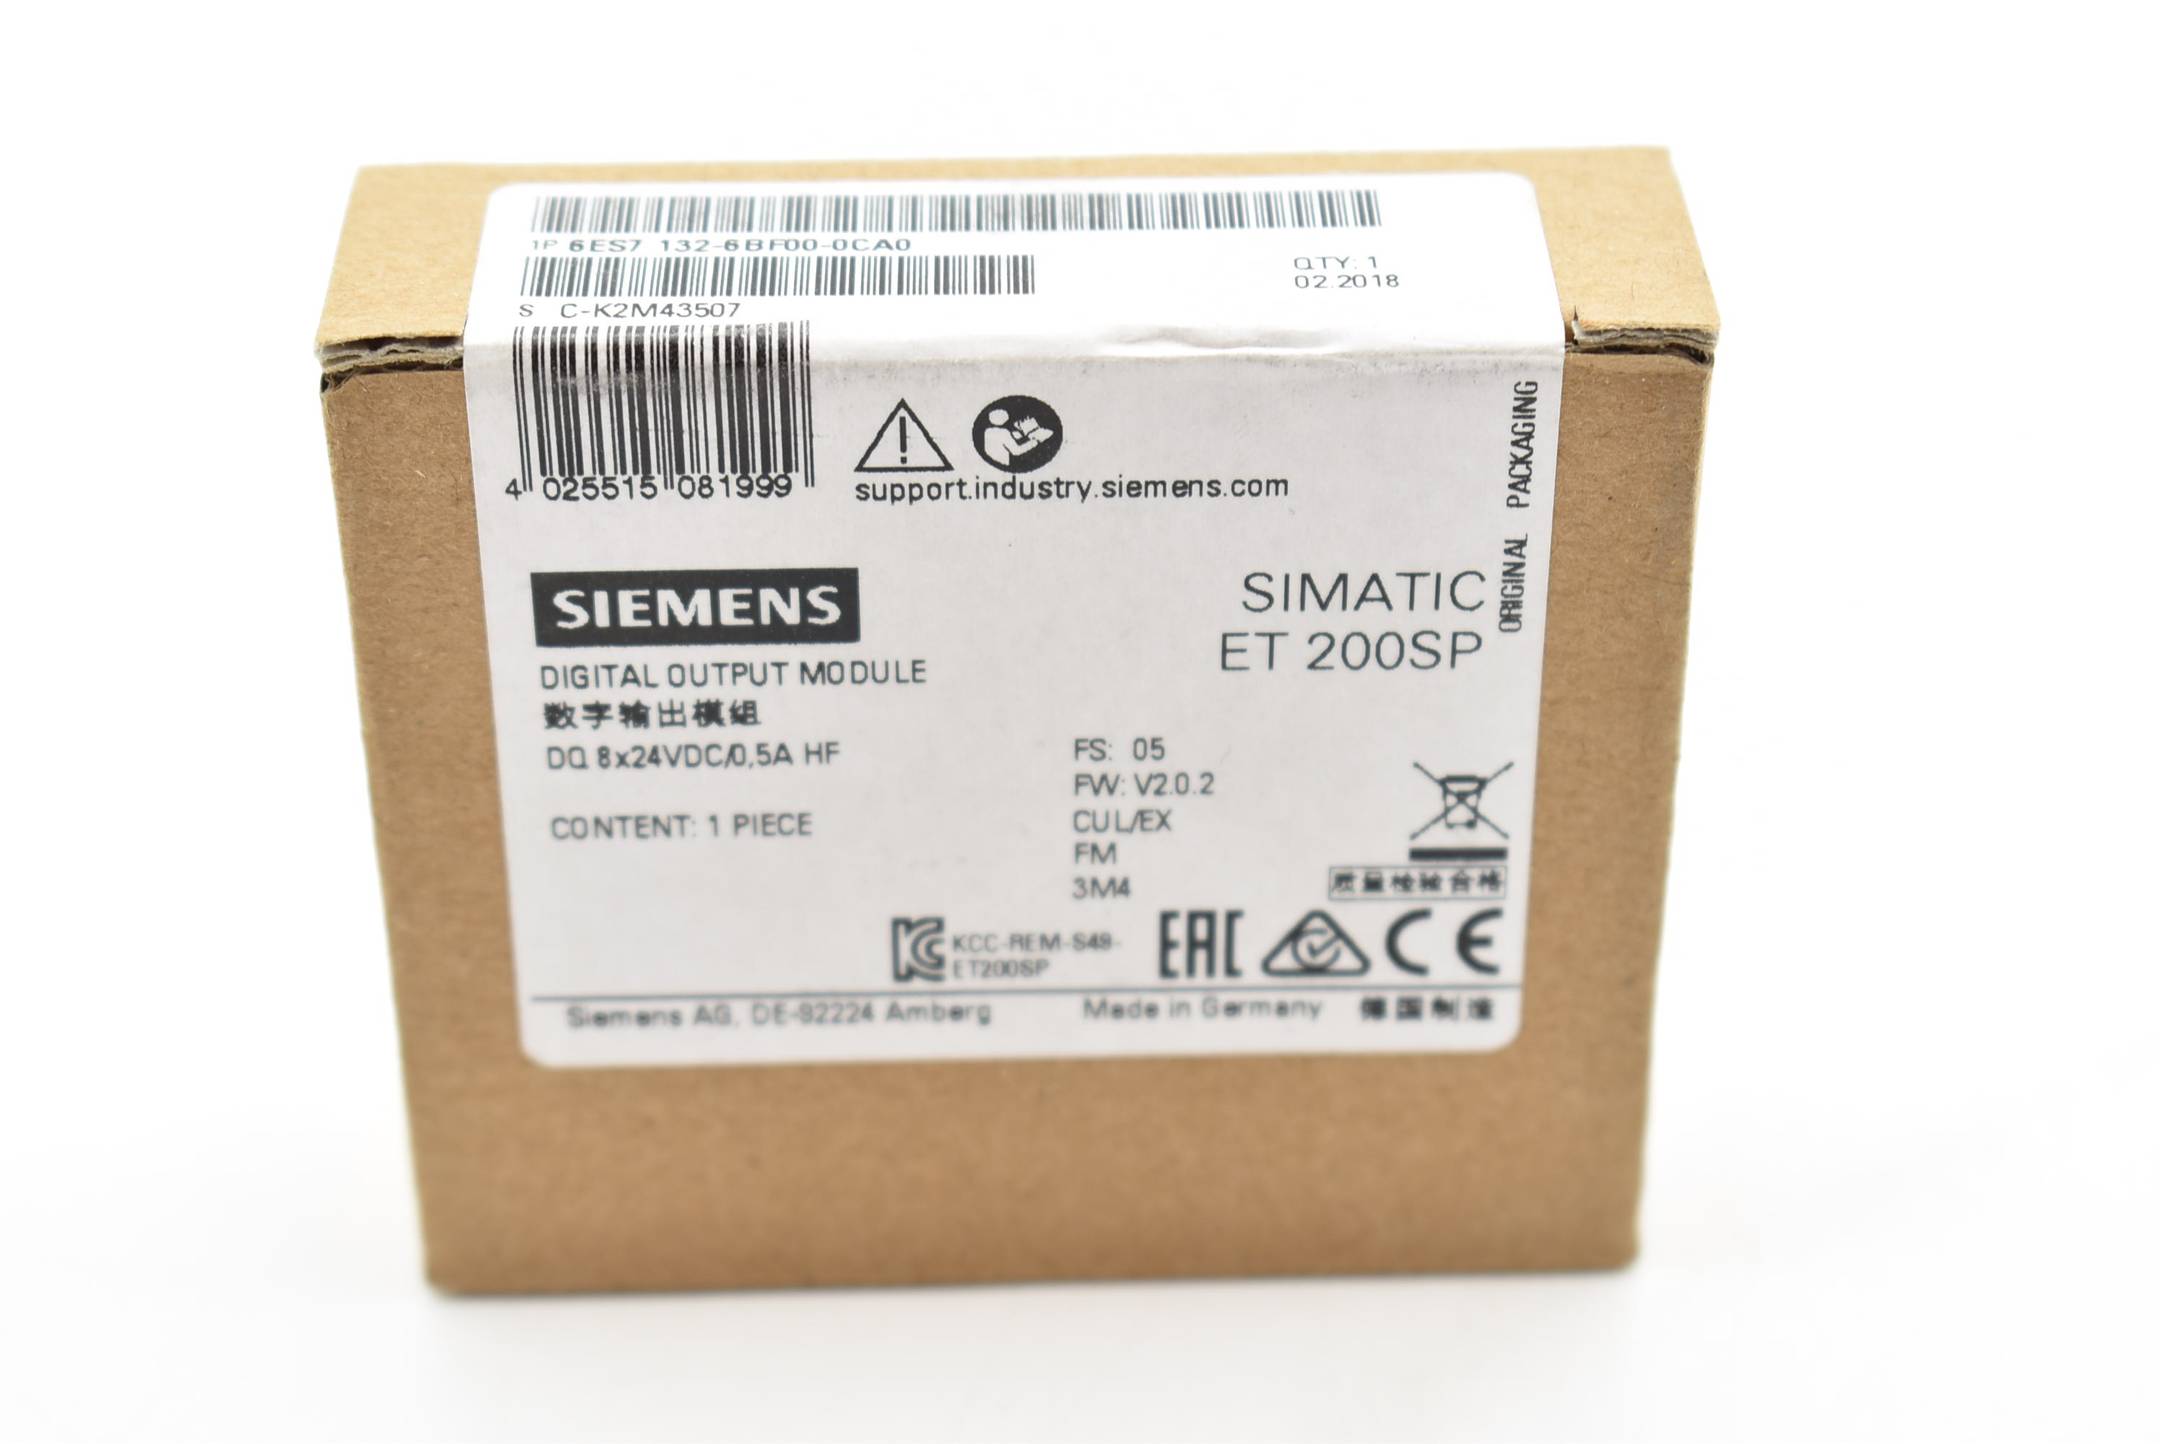 Siemens simatic ET 200SP 6ES7 132-6BF00-0CA0 ( 6ES7132-6BF00-0CA0 ) FS.5